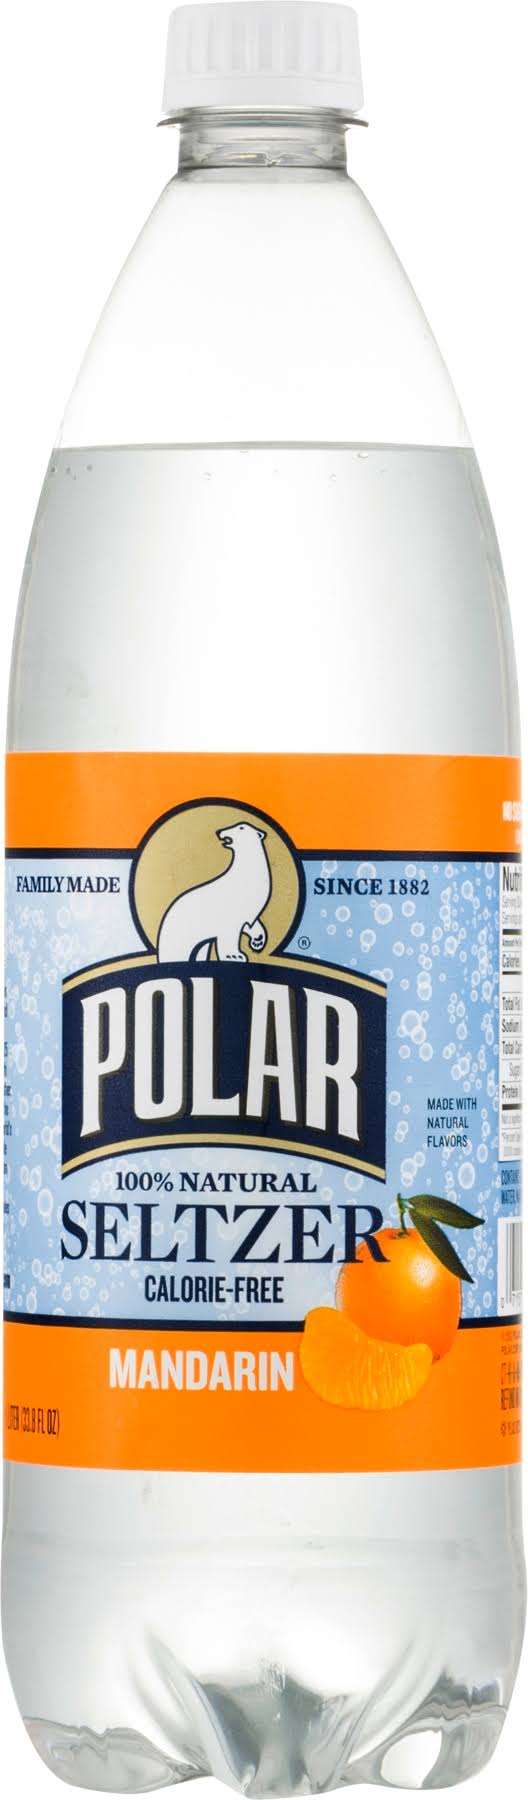 Polar Seltzer - Mandarin, 1l